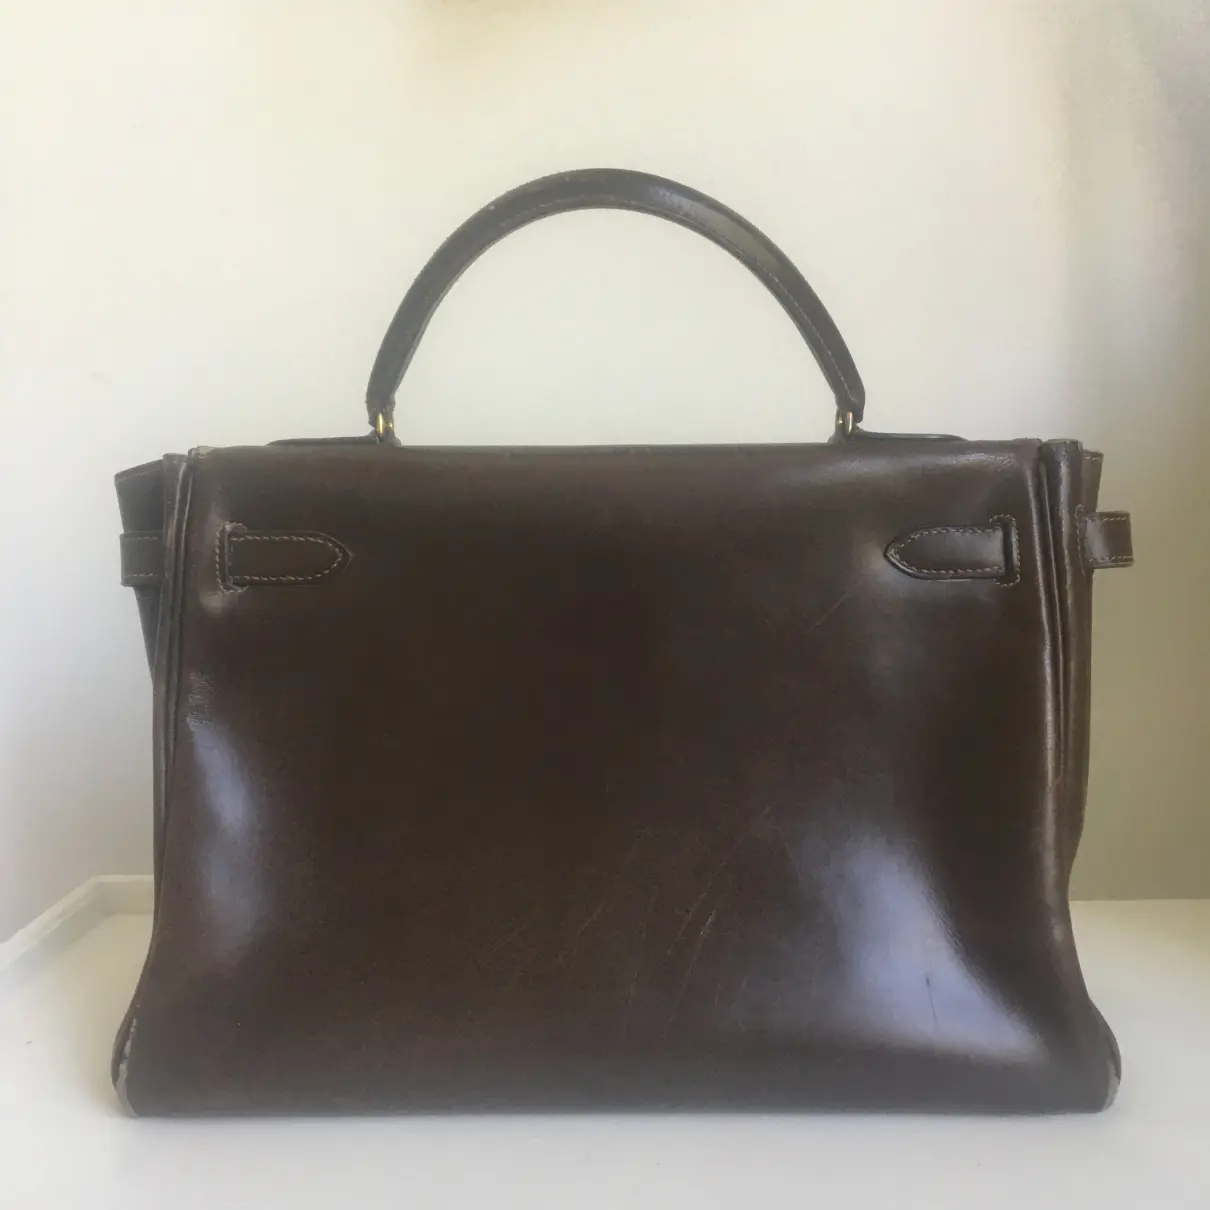 Hermès Kelly 28 leather handbag for sale - Vintage